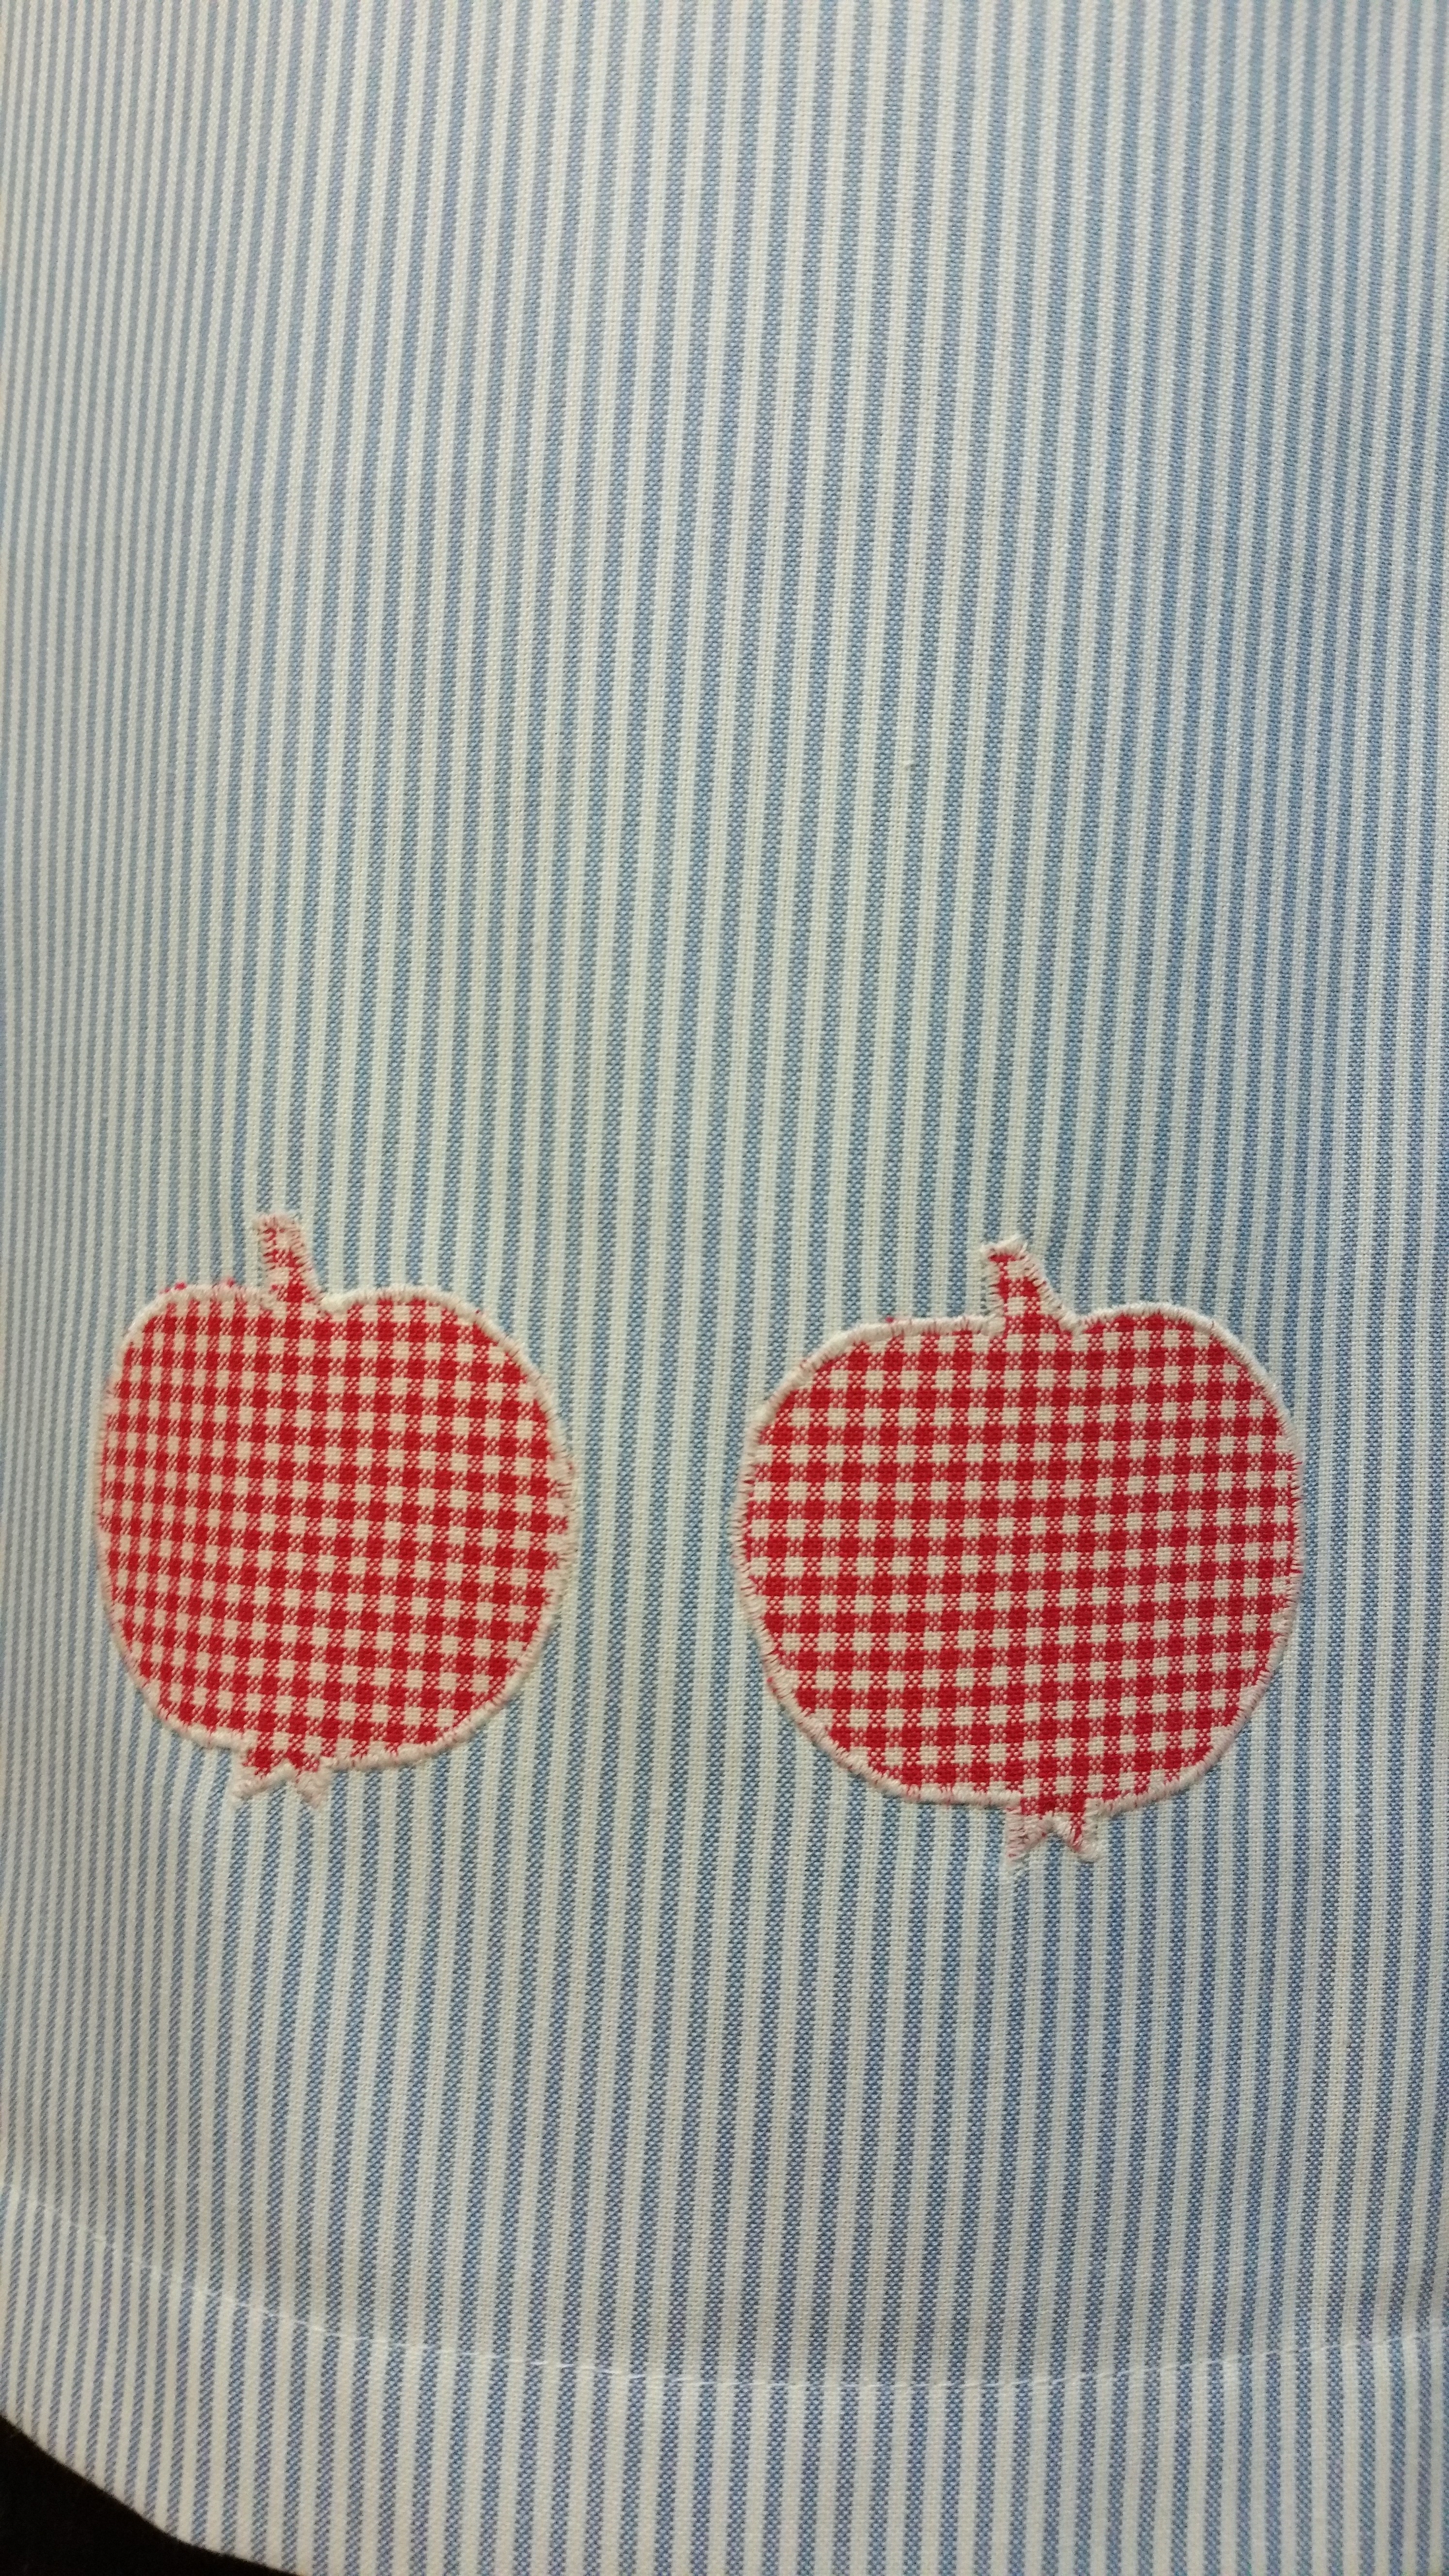 Halbschürze fein blau weiß gestreift 1 Tasche mit Apfelapplikation Handarbeit